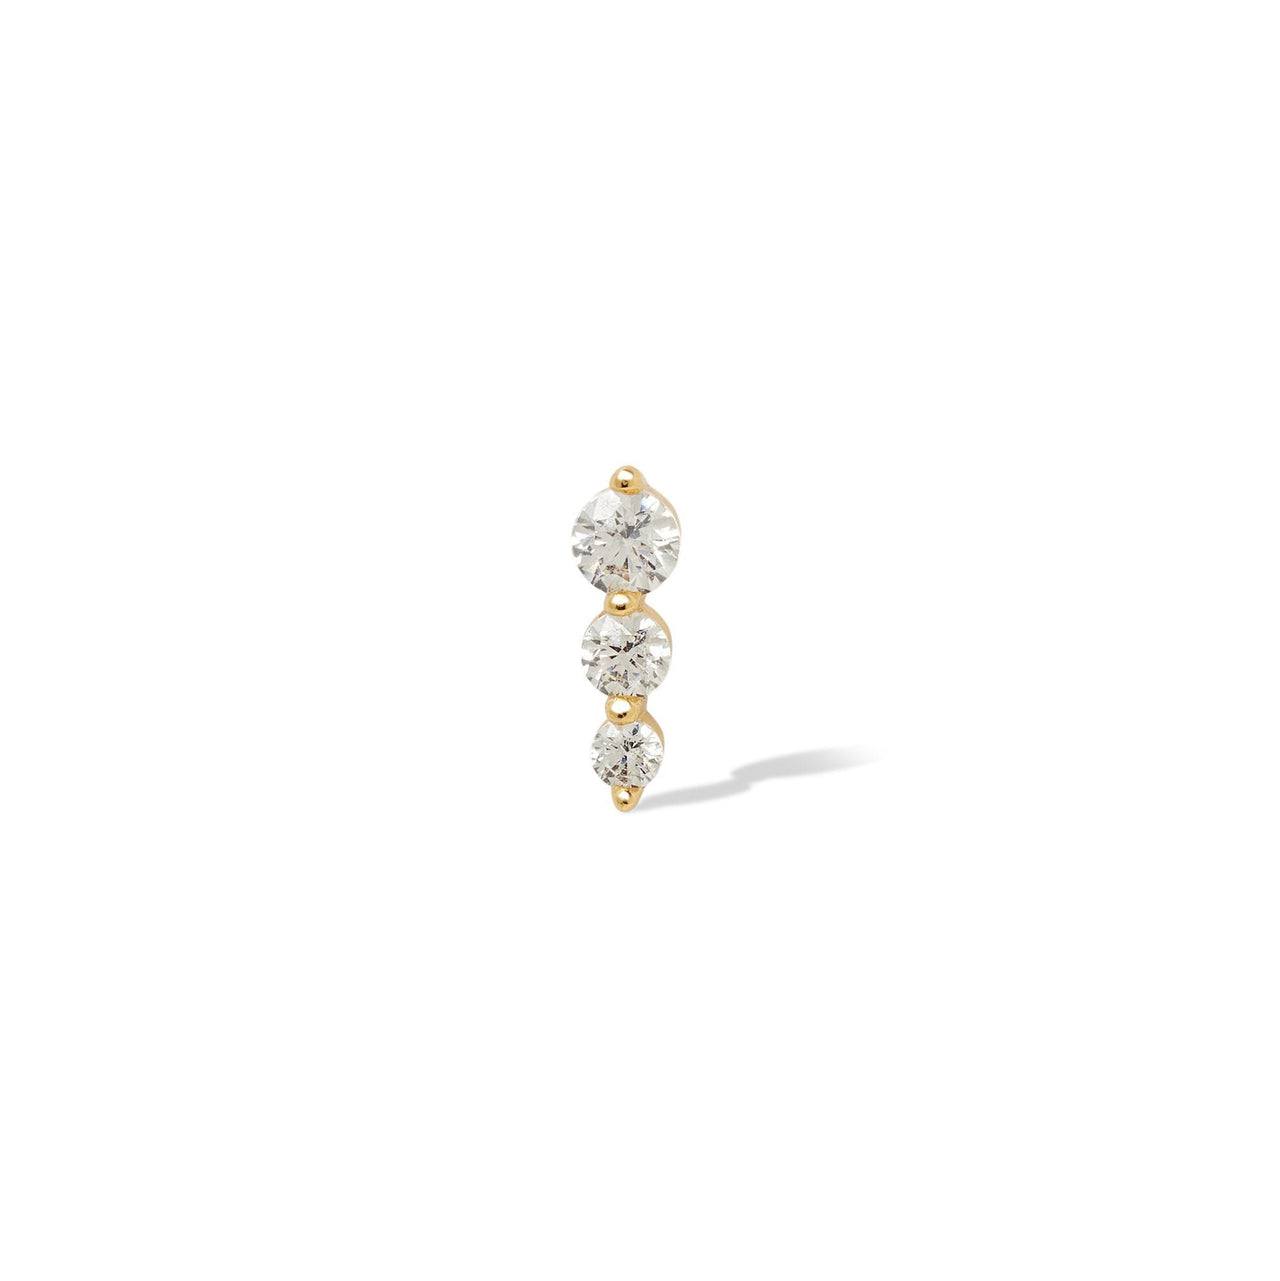 Single earring "True Love" triple dot gold vermeil stud